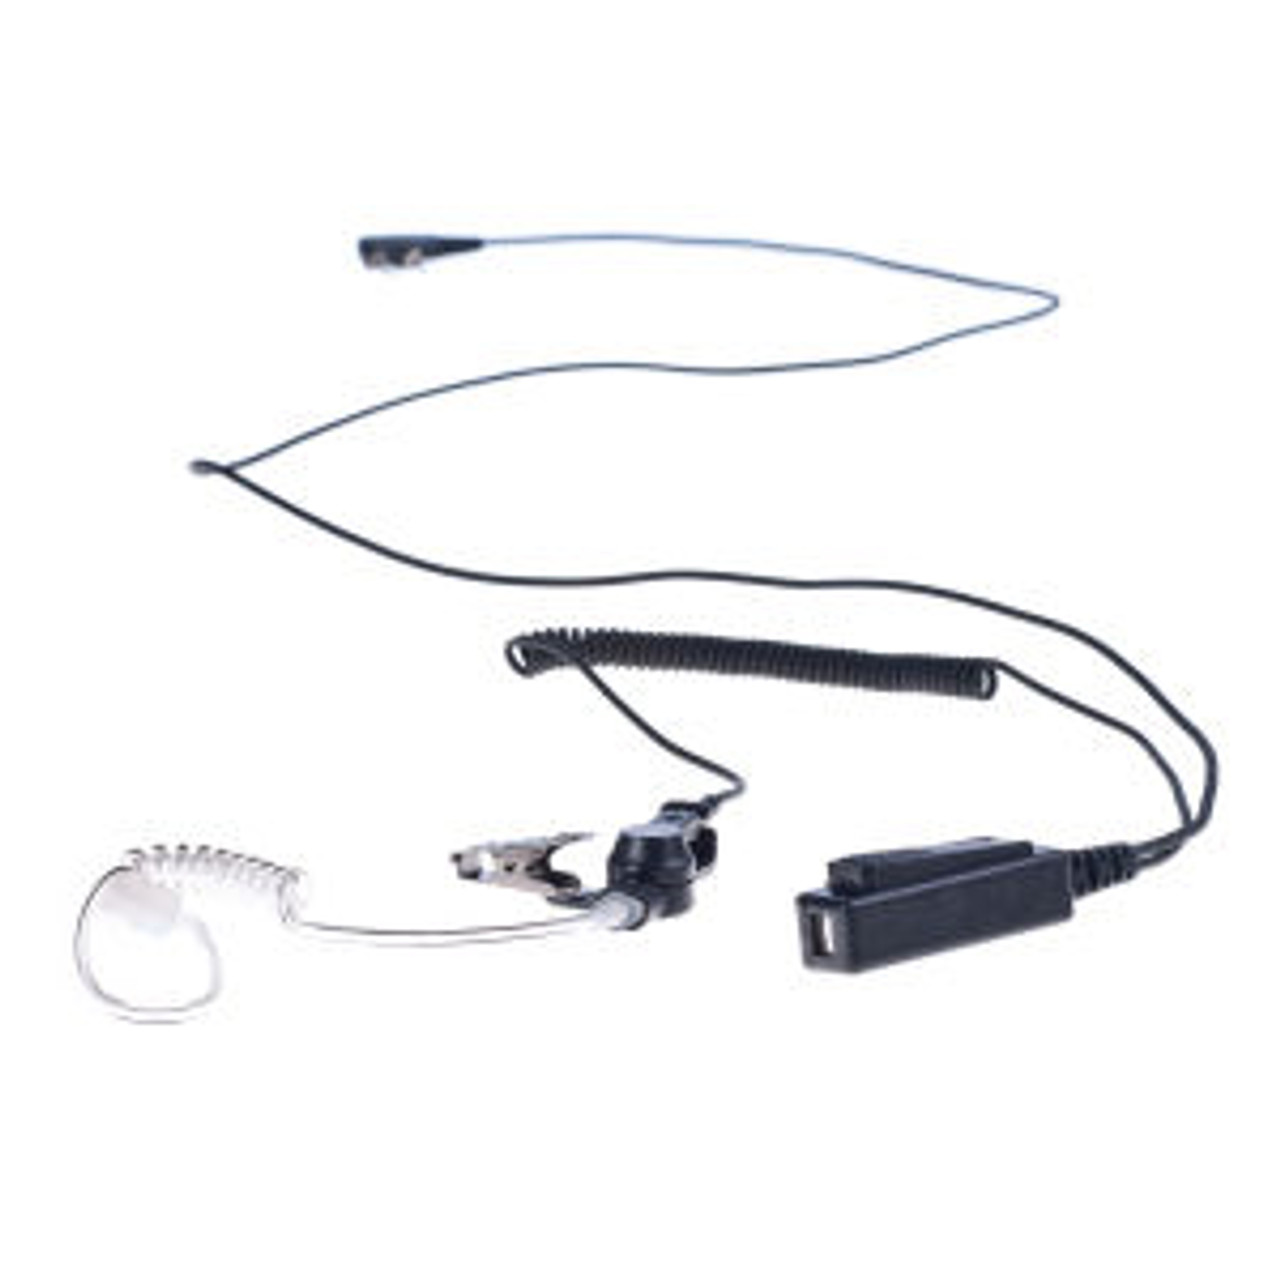 Harris P7100 1-Wire Surveillance Kit